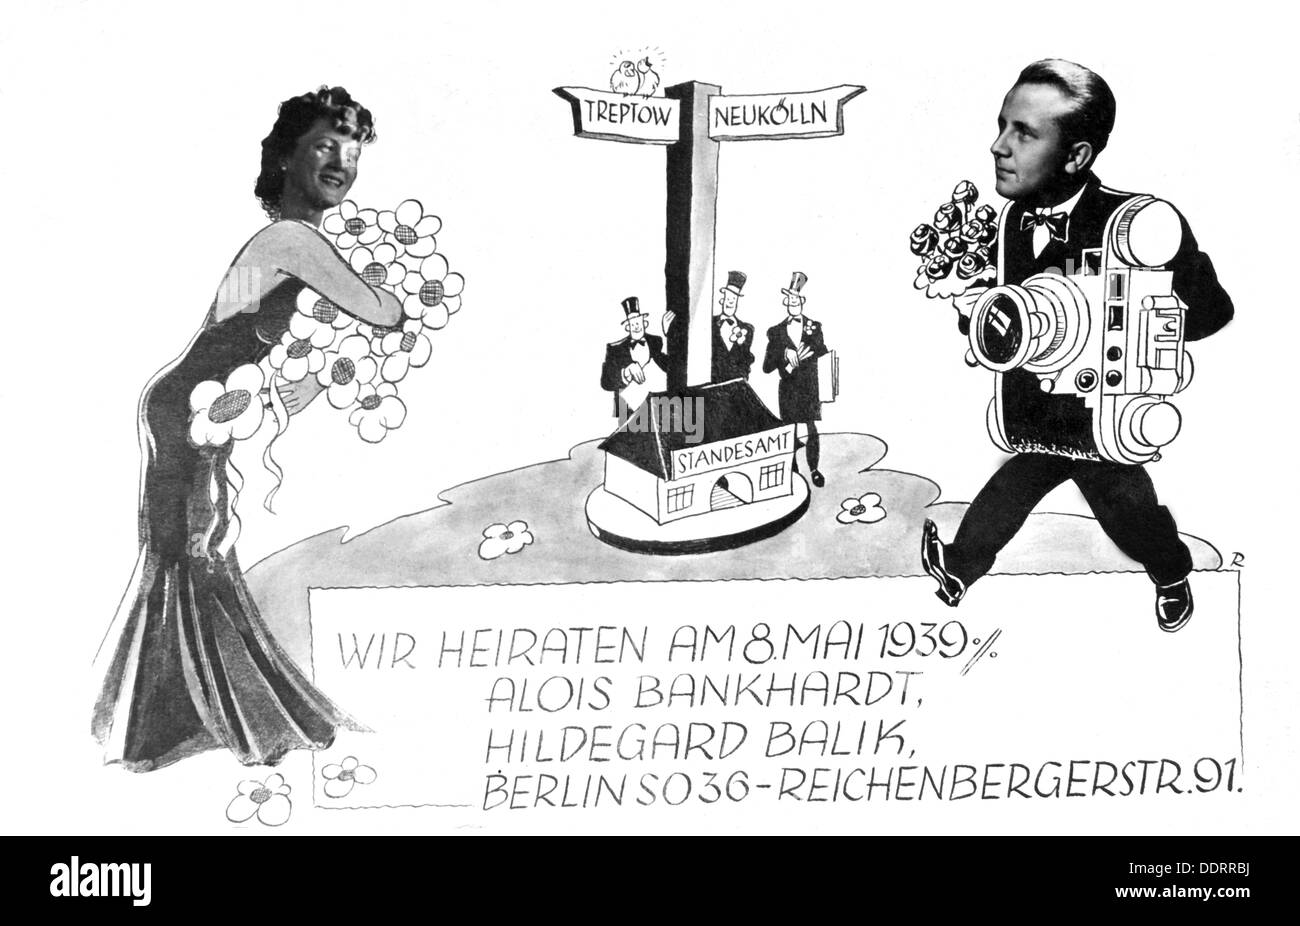 Personen, Hochzeit, Vorbereitungen, Hochzeitseinladung von Hildegard Balik und Alois Bankhardt, Berlin, 8.5.1939, Zusatzrechte-Clearences-nicht verfügbar Stockfoto